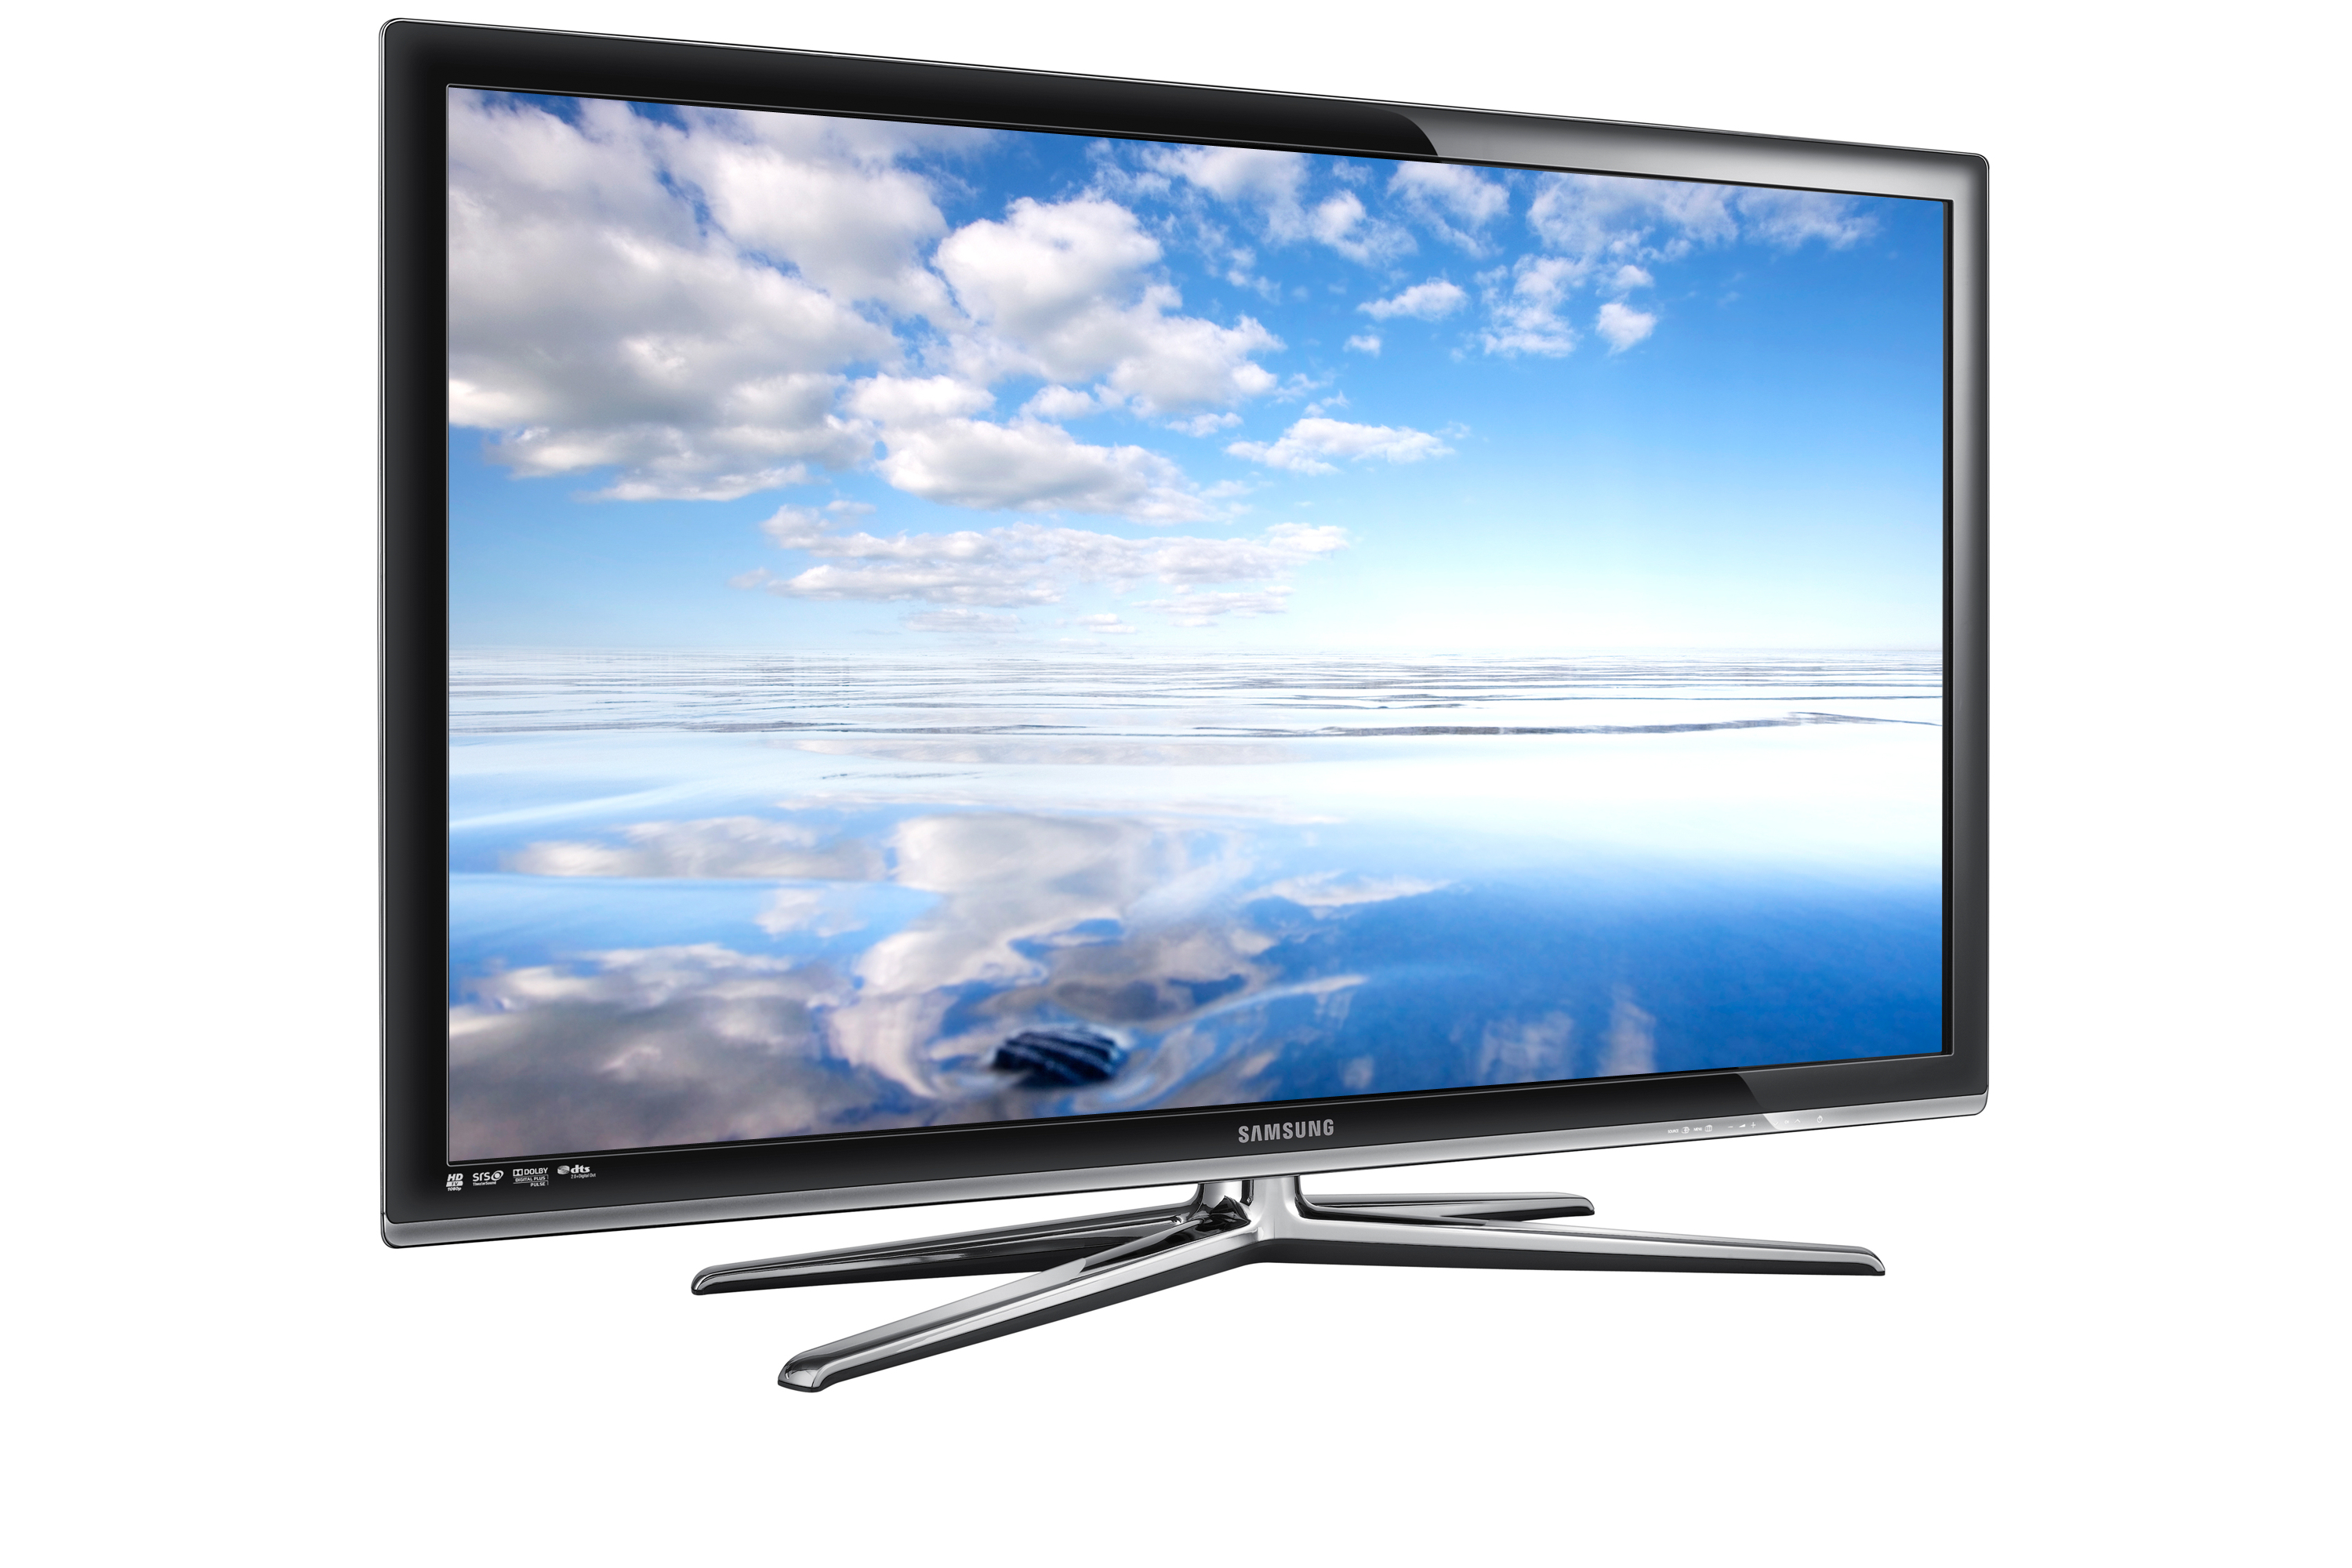 Куплю телевизор в минске цена. Телевизор Samsung ue46c7000 46". Ue46c7000ww подставка Samsung. Samsung ue40d7000 led. Samsung ue55d7000 led.